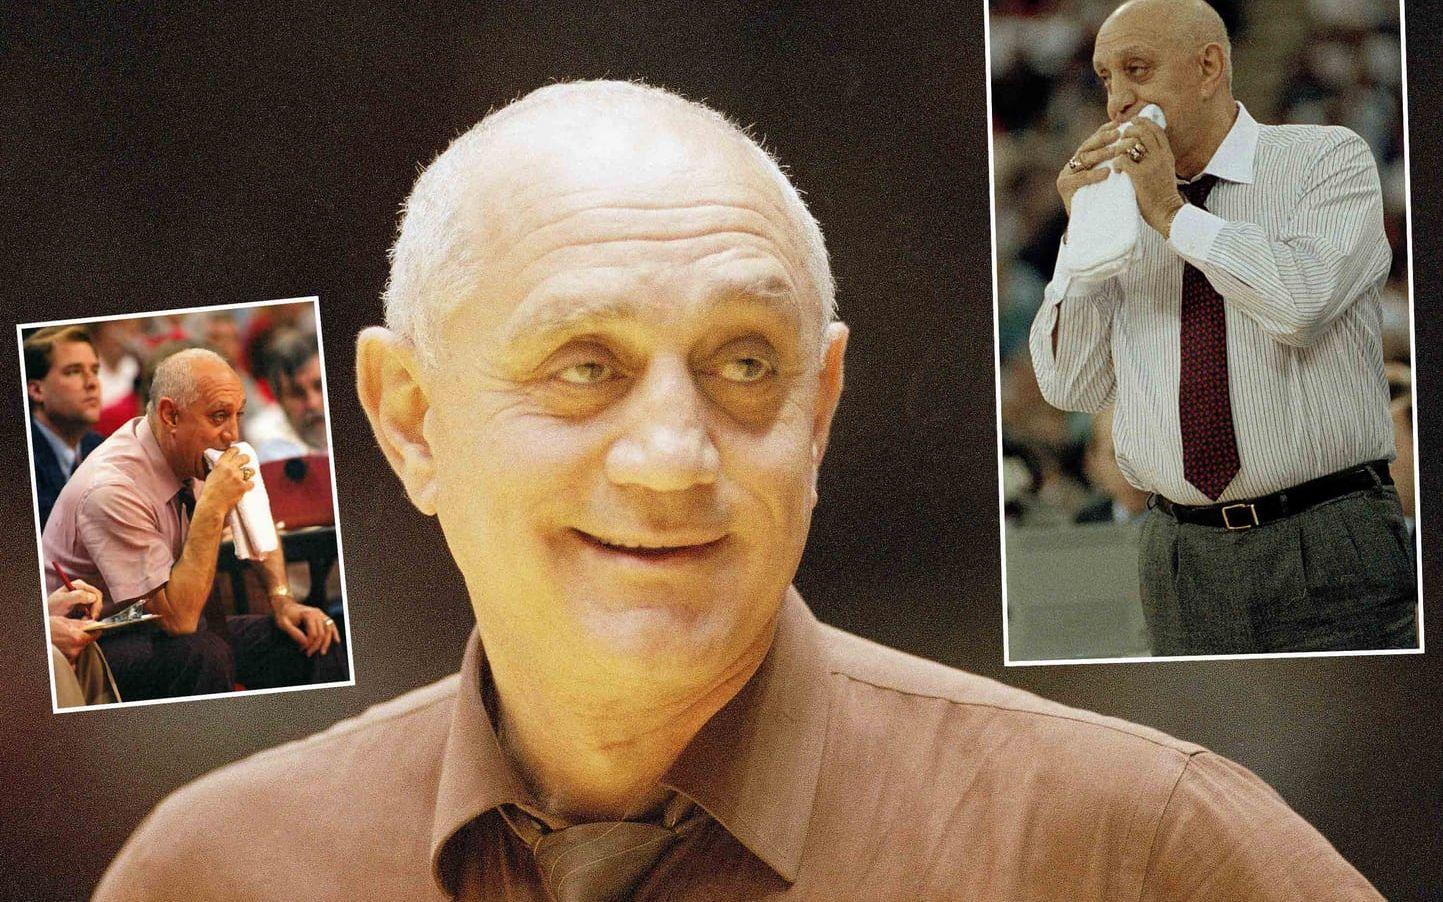 Basketcoachen Jerry Tarkanian tuggade ofta på en blöt handduk under matcherna. Han gjorde det i stället för att dricka vatten när han blev torr i munnen. Foto: TT